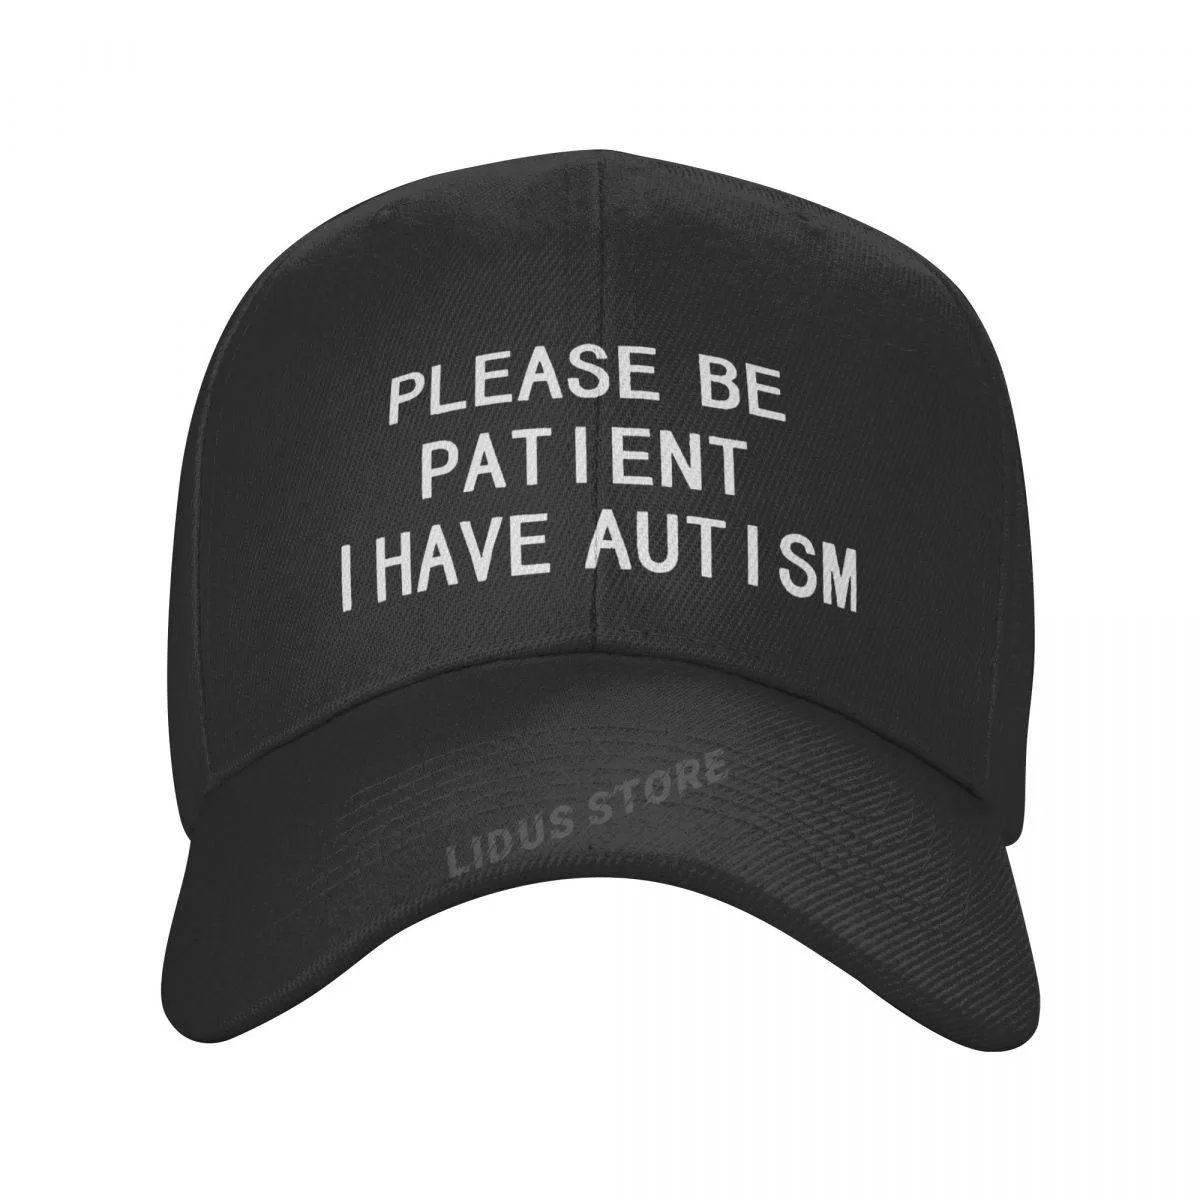 Please купить. Papers please be Patient i have Autism meme.